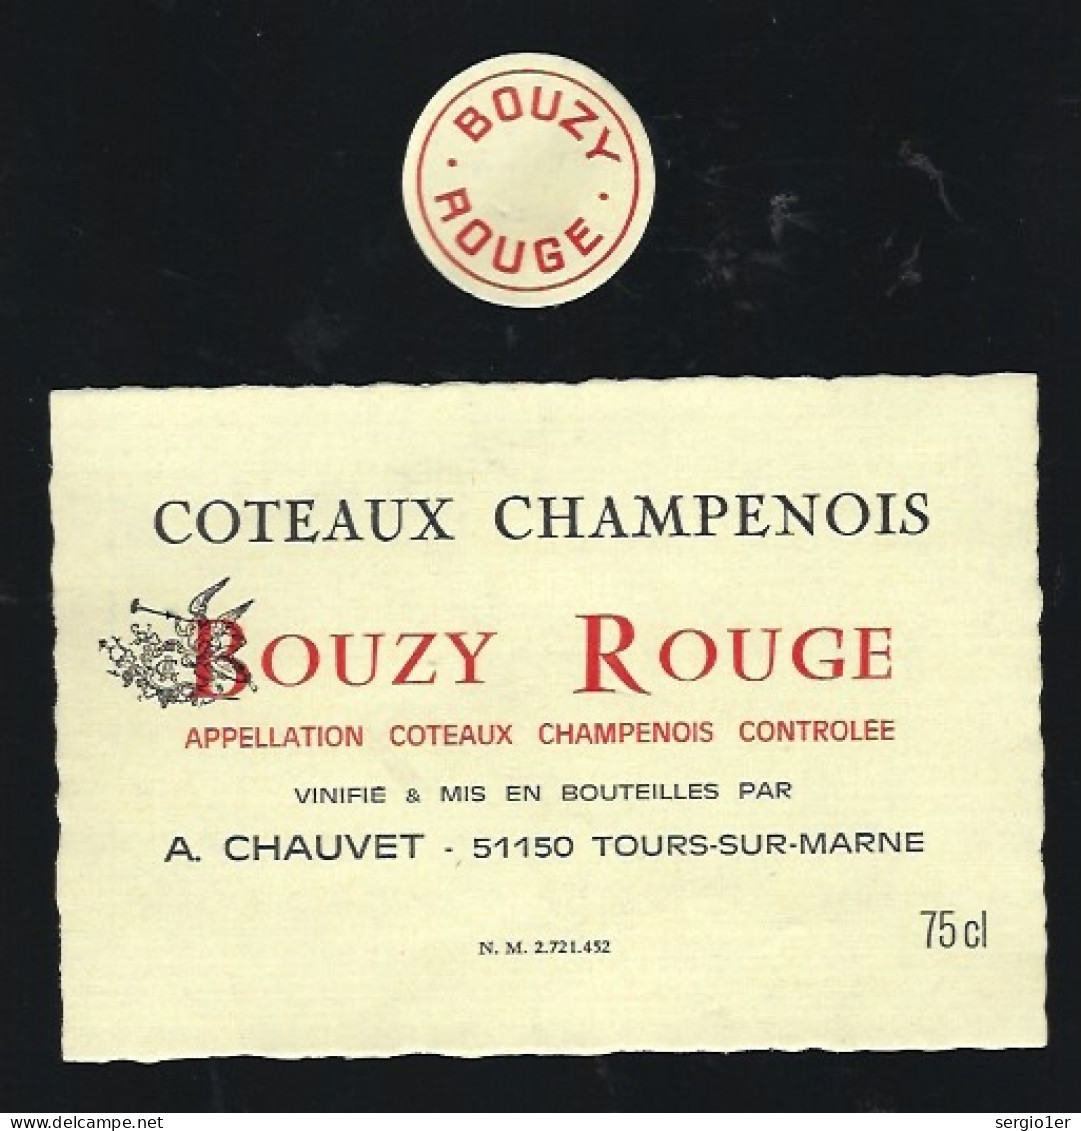 Etiquette Champagne Bouzy Rouge A Chauvet  Tours Sur Marne Marne 51 - Champagner